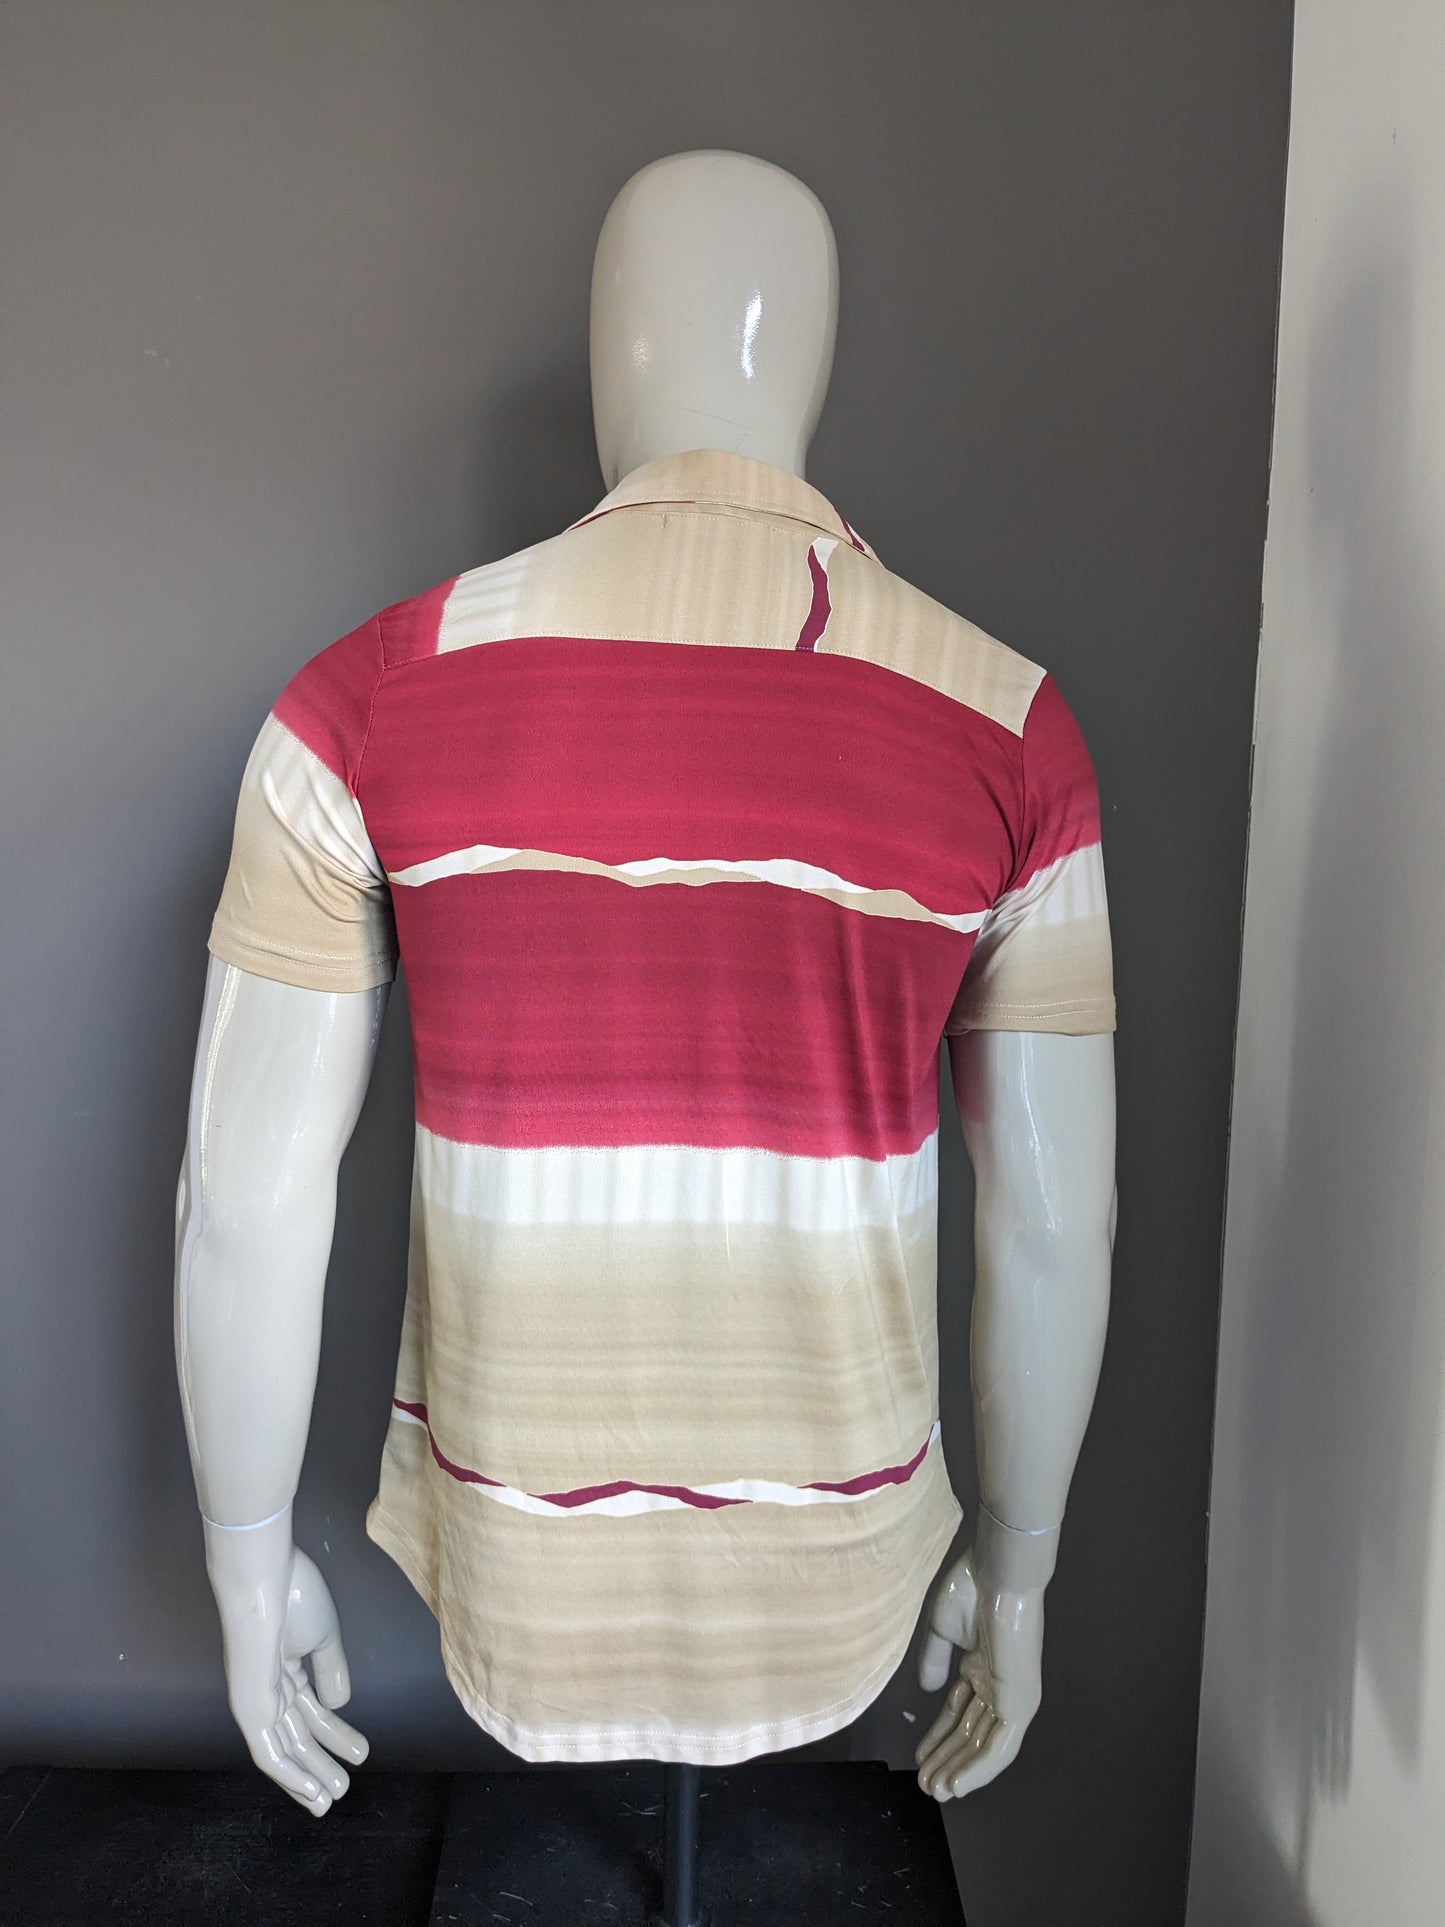 Shirt CSC vintage manica corta. Colore rosso beige marrone. Taglia L. Allungamento.